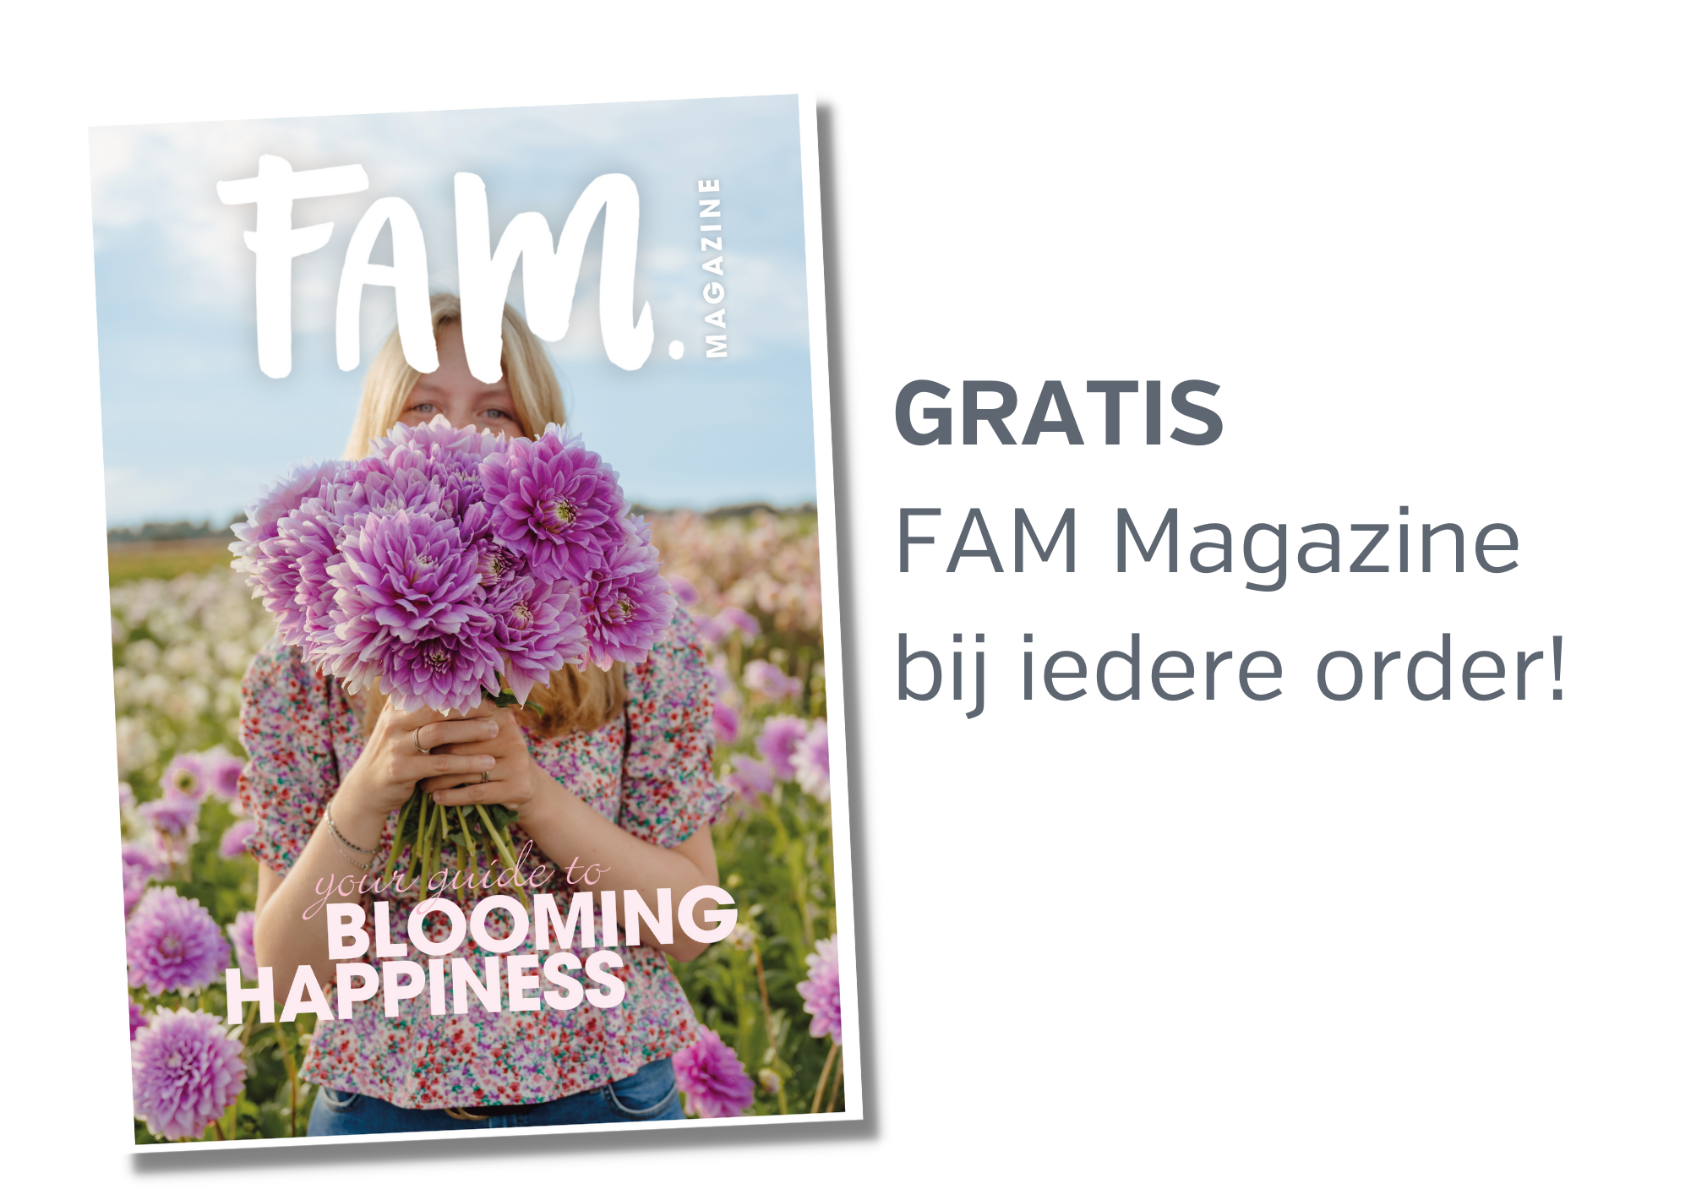 Gratis FAM magazine